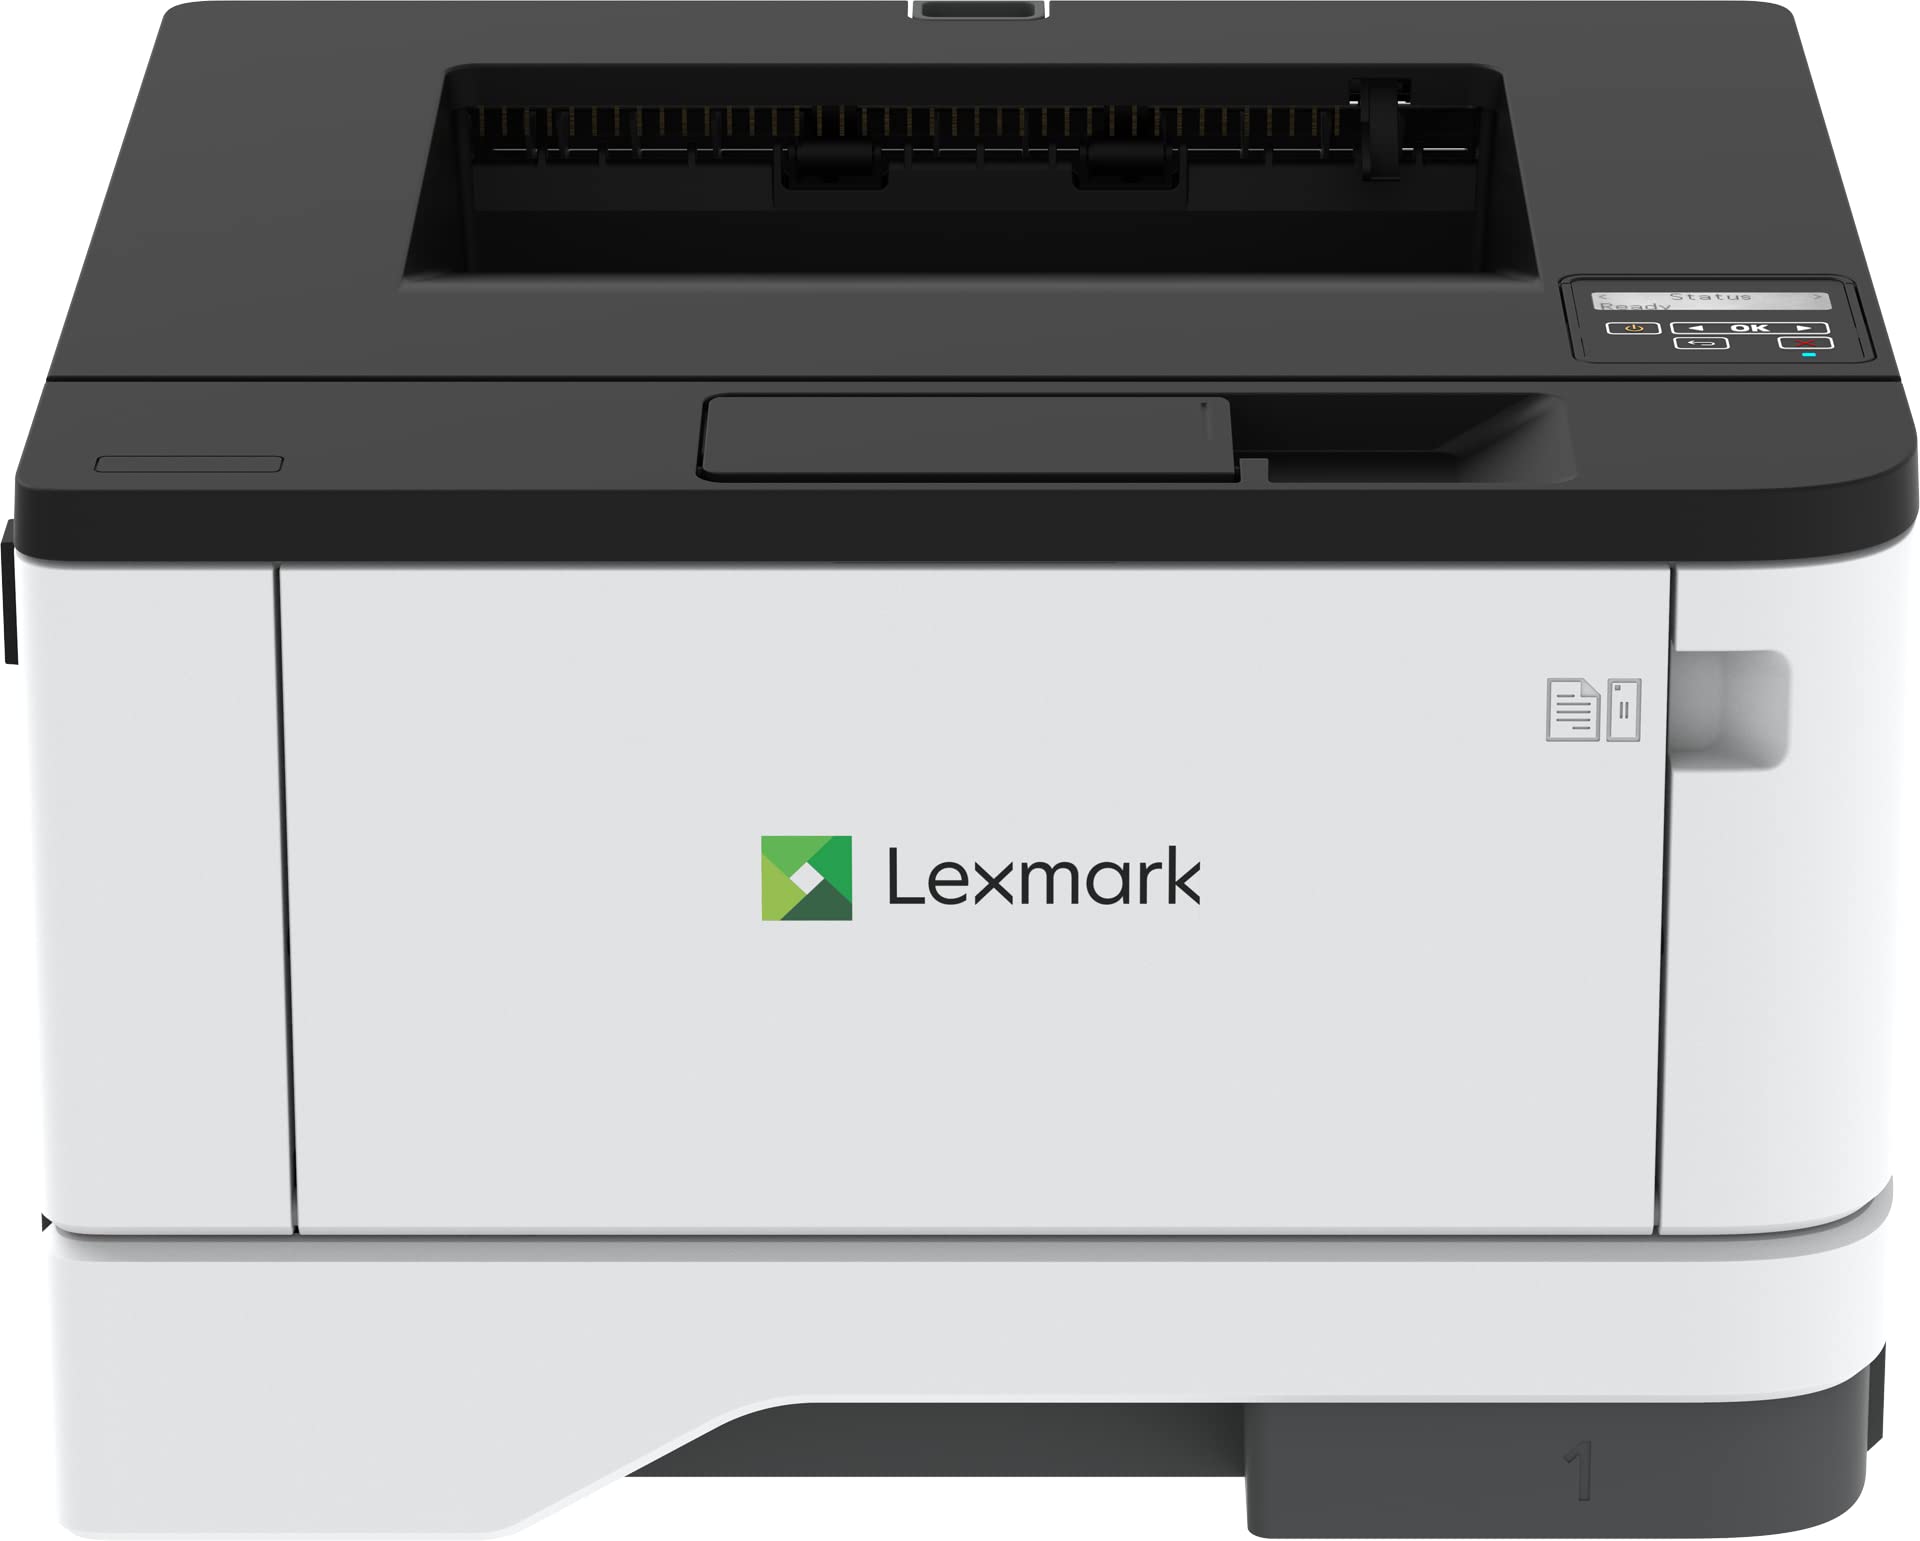  Lexmark Лазерный принтер MS331DN — Монохромный — 40 страниц в минуту Монохромный — Печать с разрешением 2400 dpi — Авт...